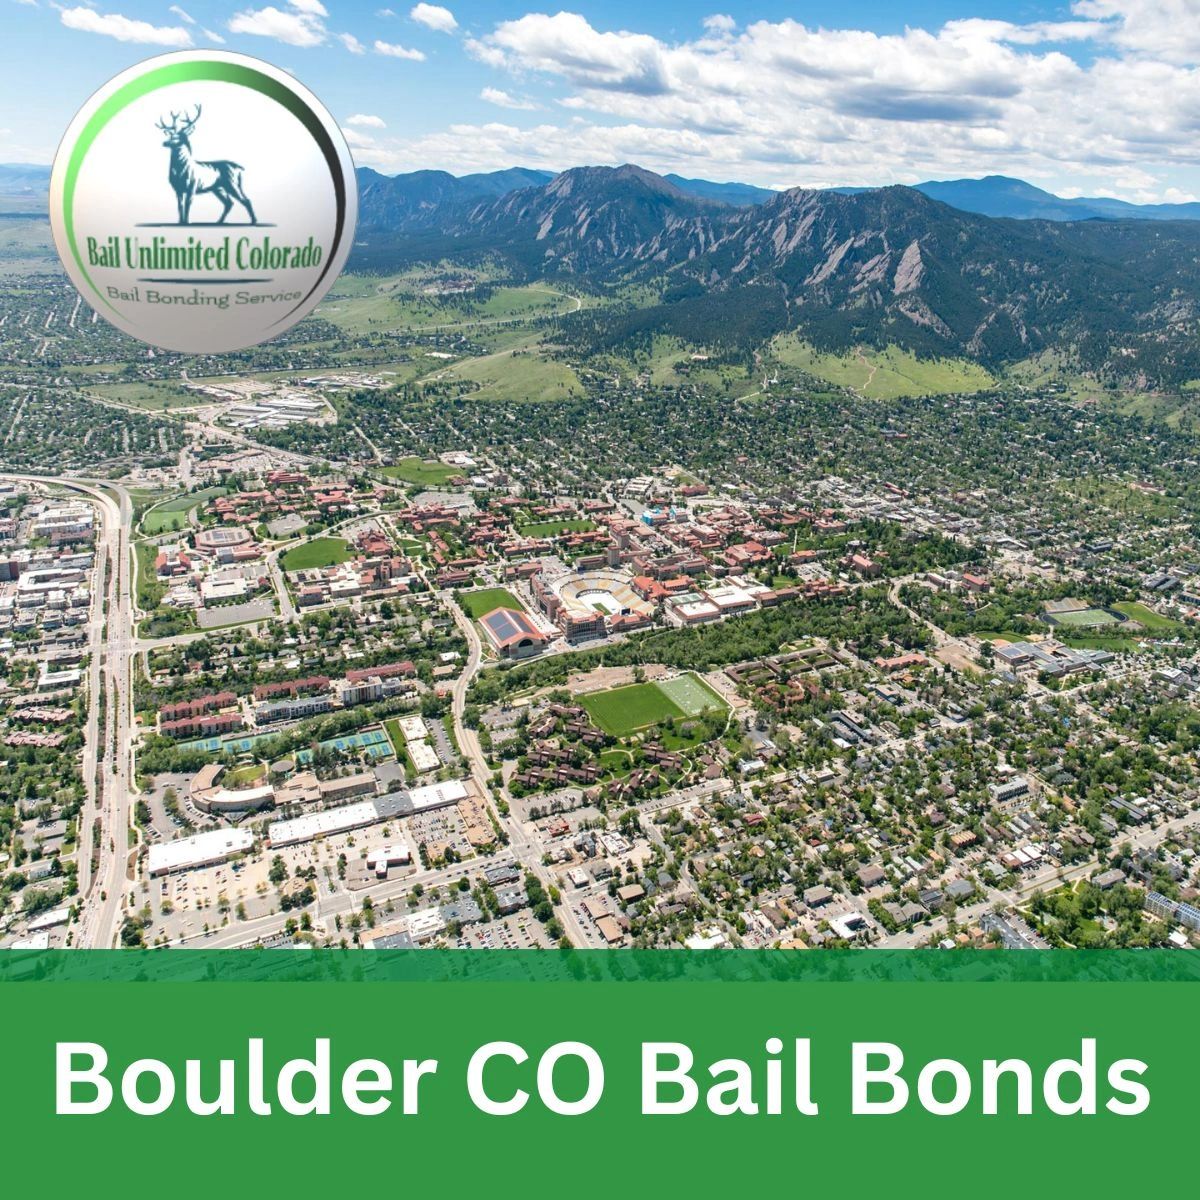 LOGO Bail Unlimited Colorado TEXT Boulder CO Bail Bonds IMAGE Boulder City 40.01498, -105.27054